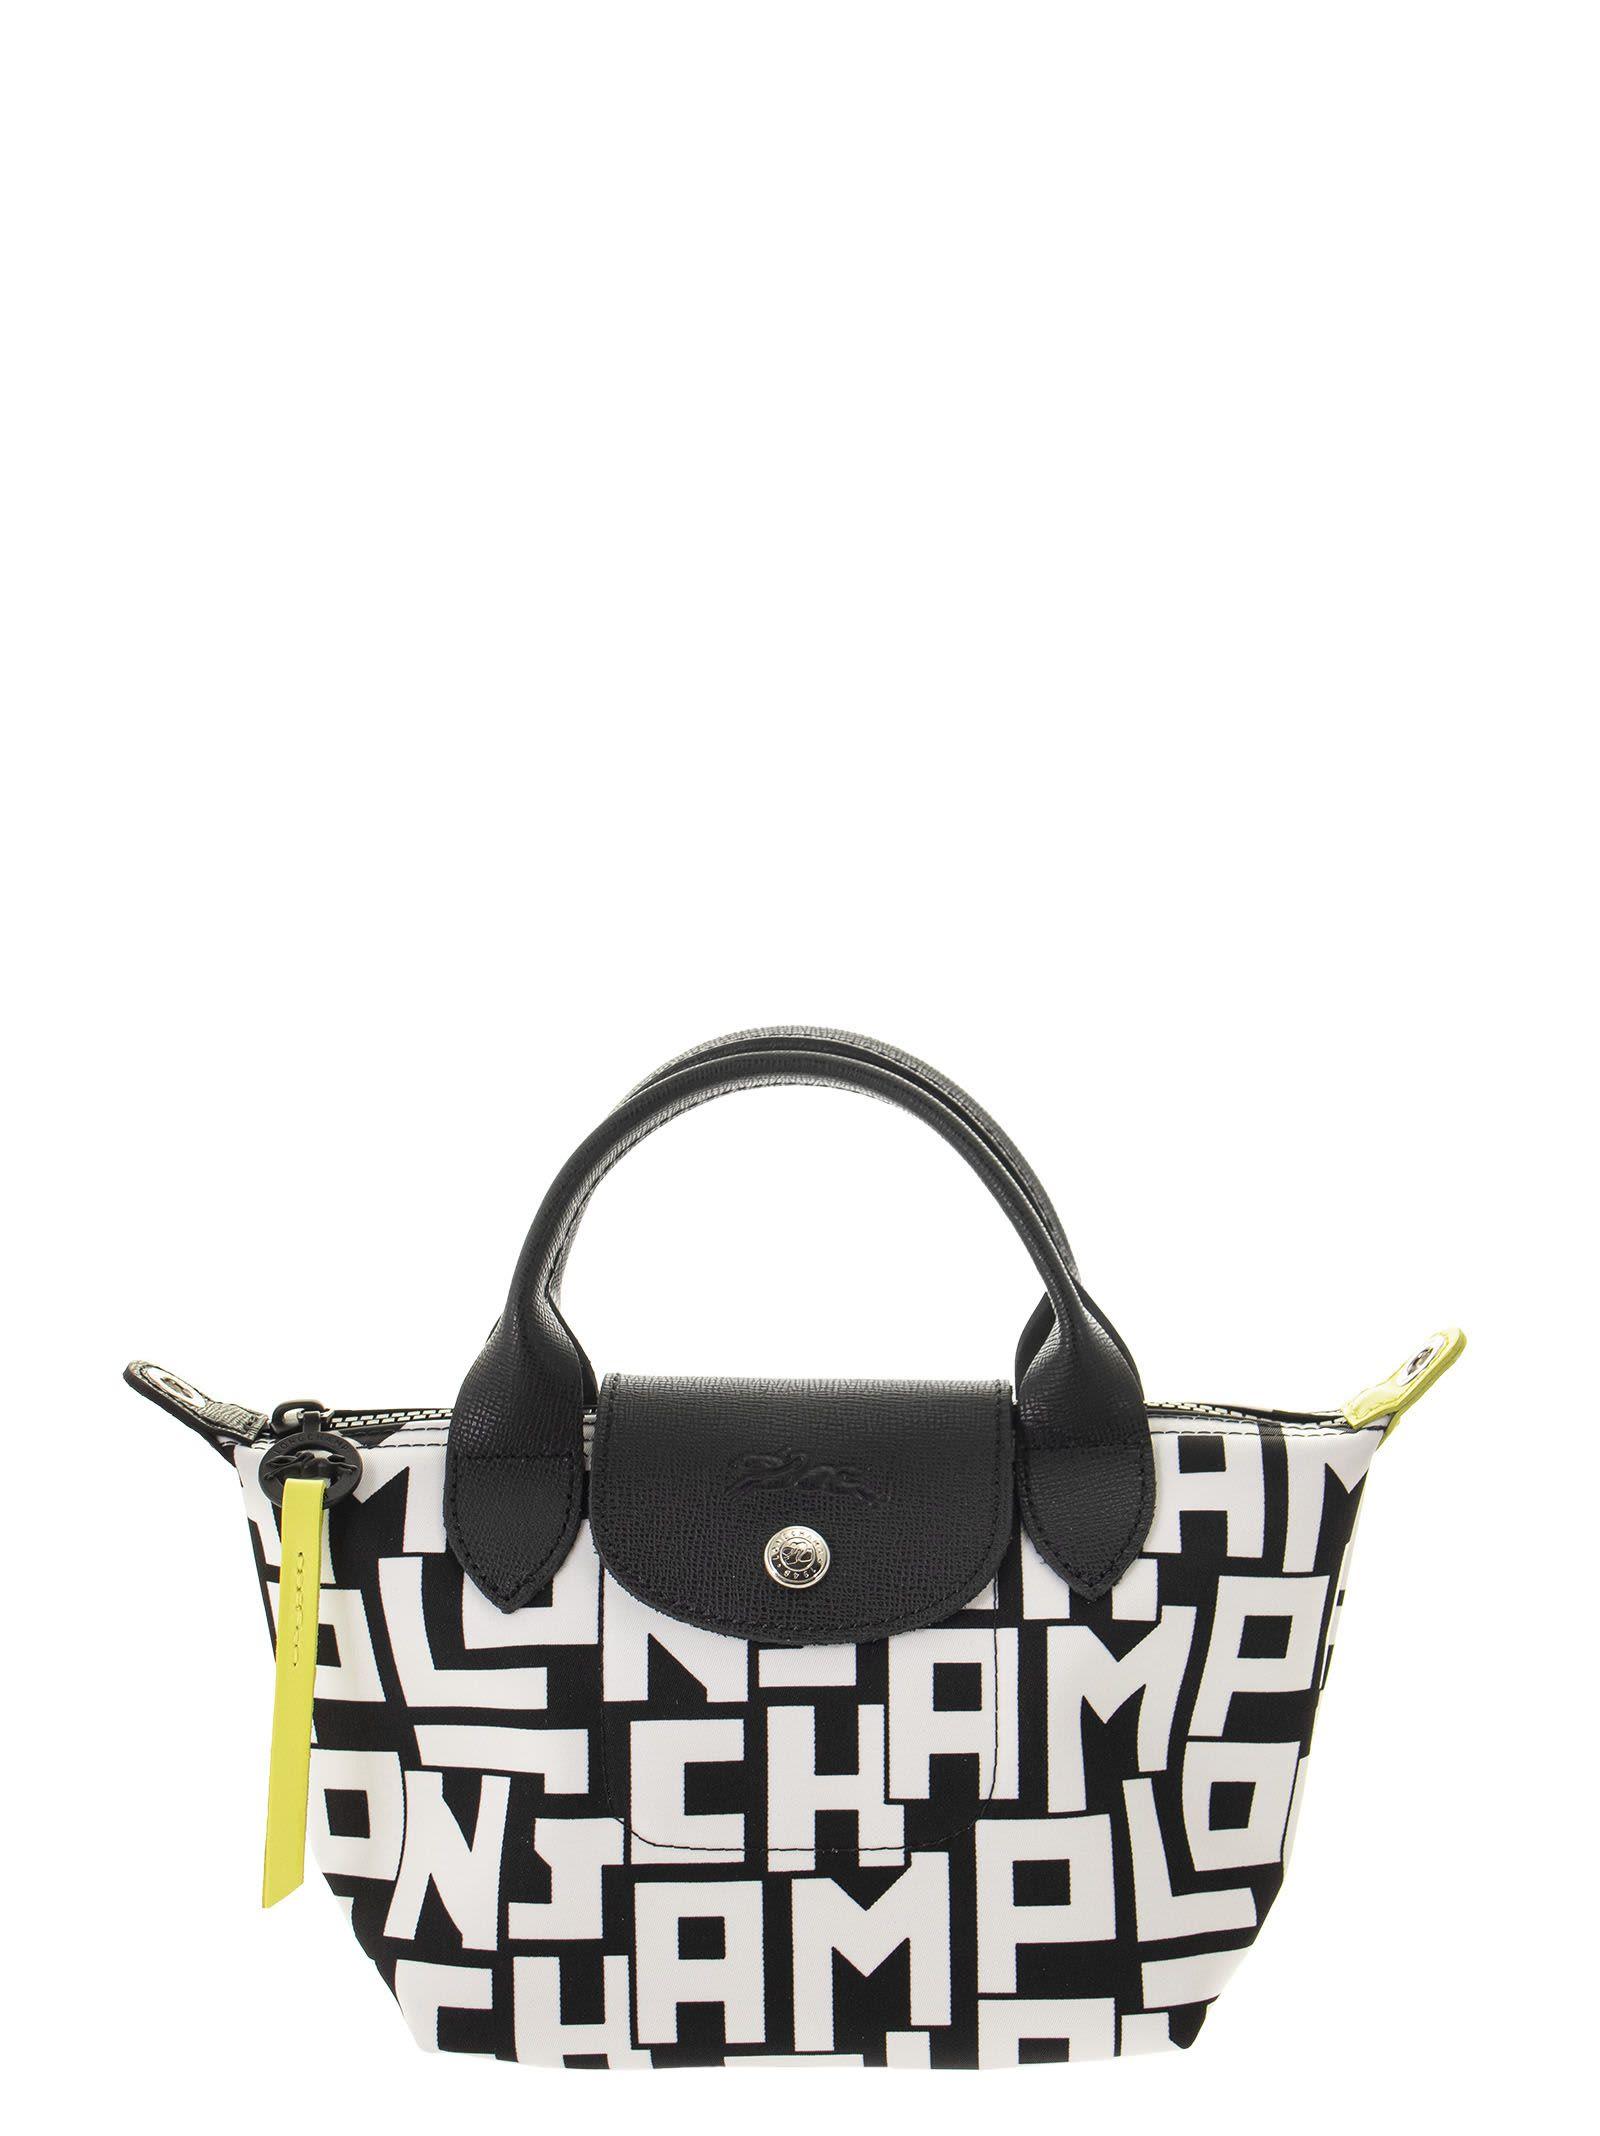 Longchamp Ladies Le Pliage Top Handle Bag M-Black 